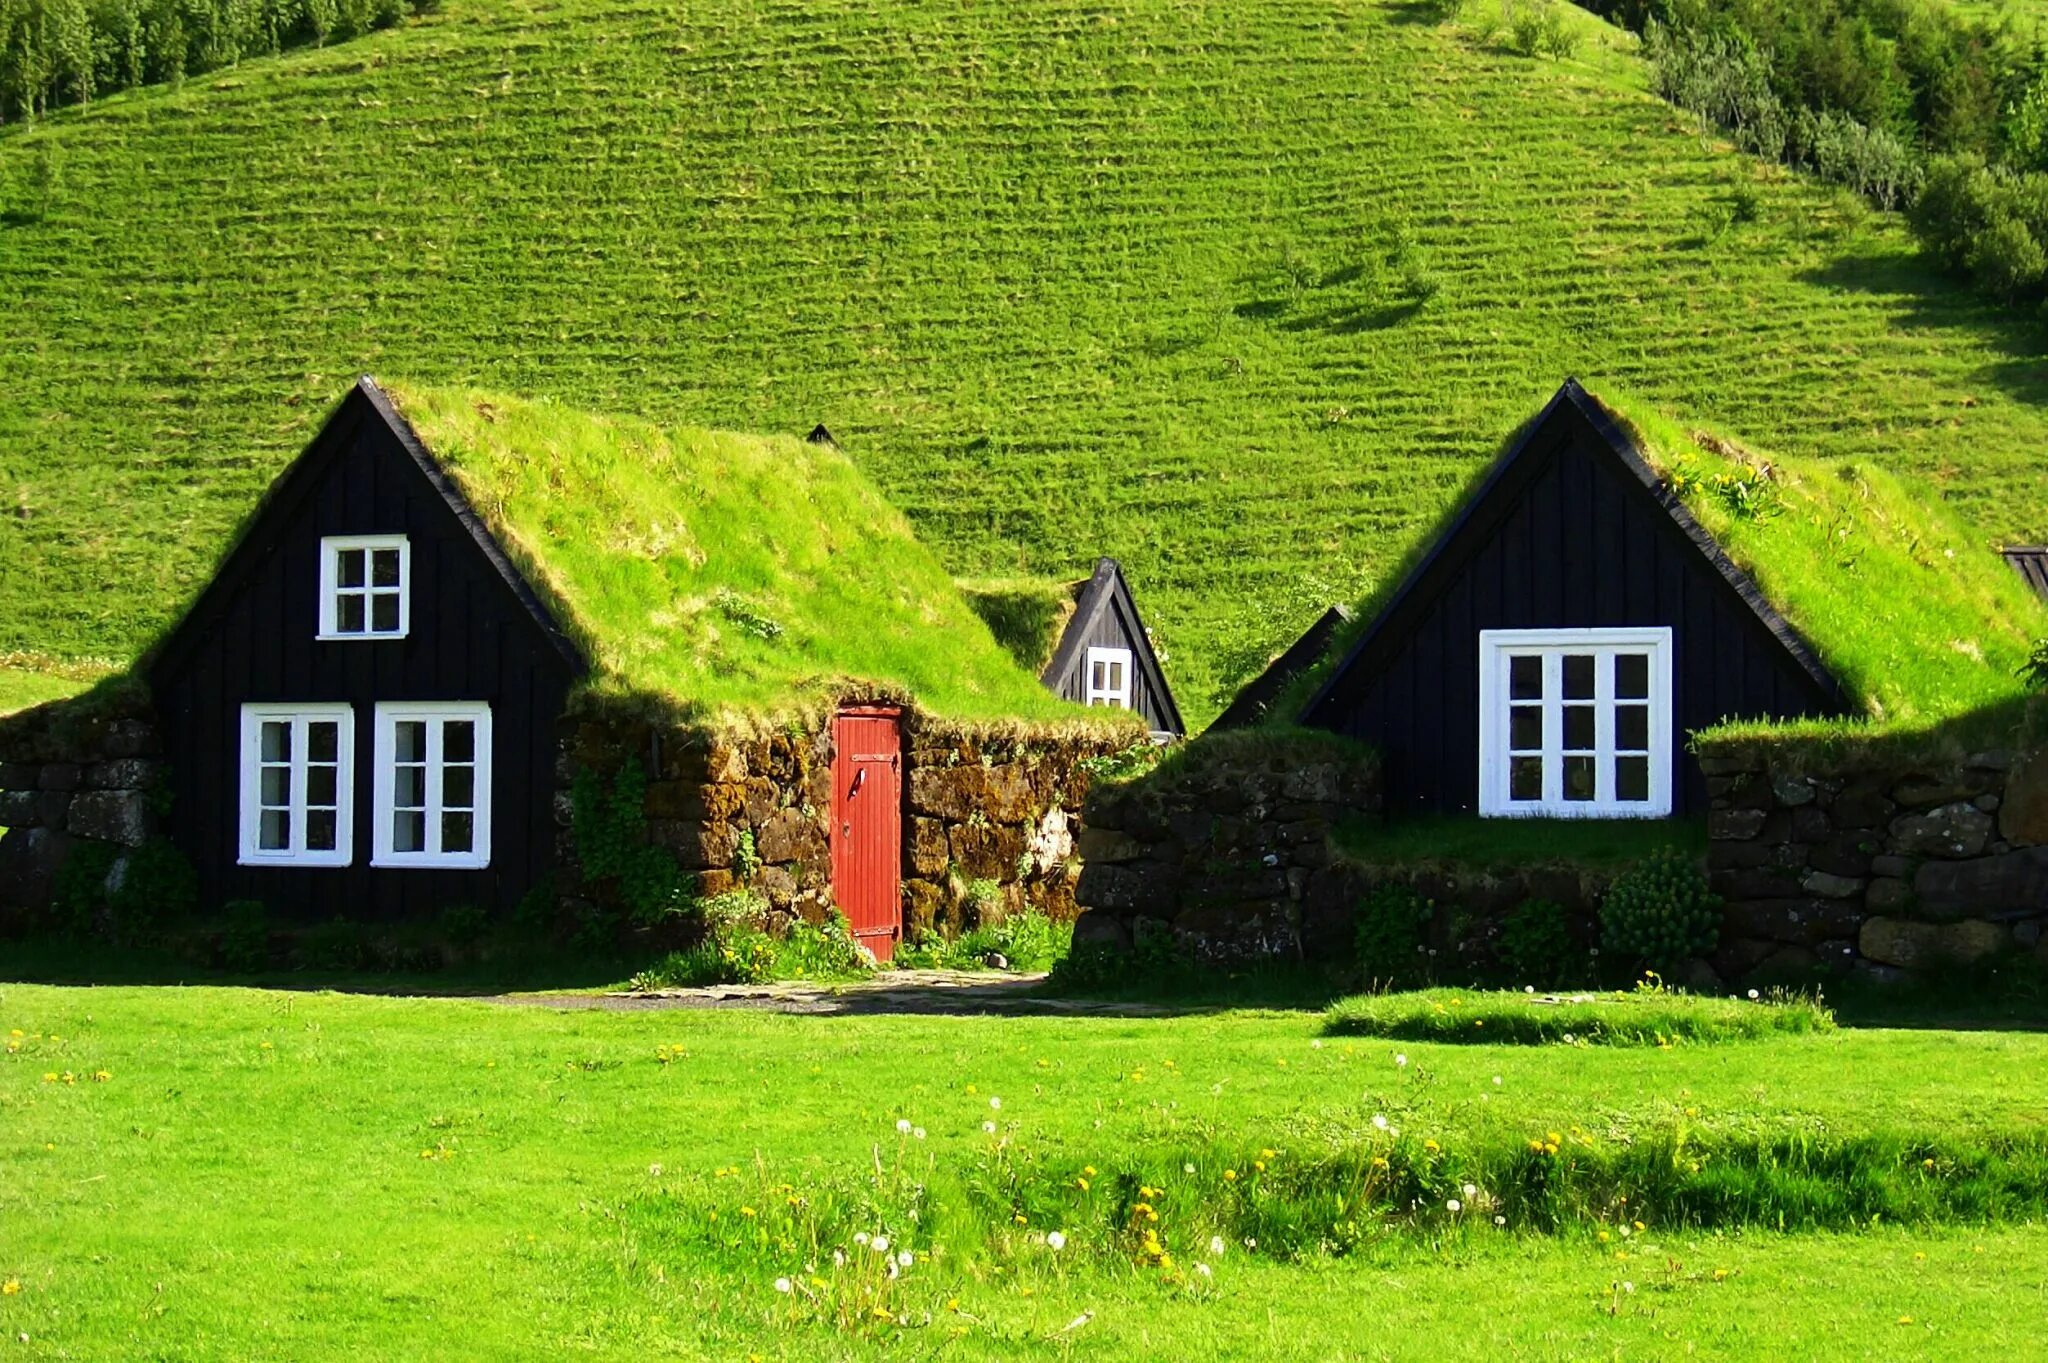 Земляная крыша. Зеленая кровля Скандинавия. Дом из дерна Исландия. Фарерские острова скандинавские домики. Зеленая кровля Норвегия.